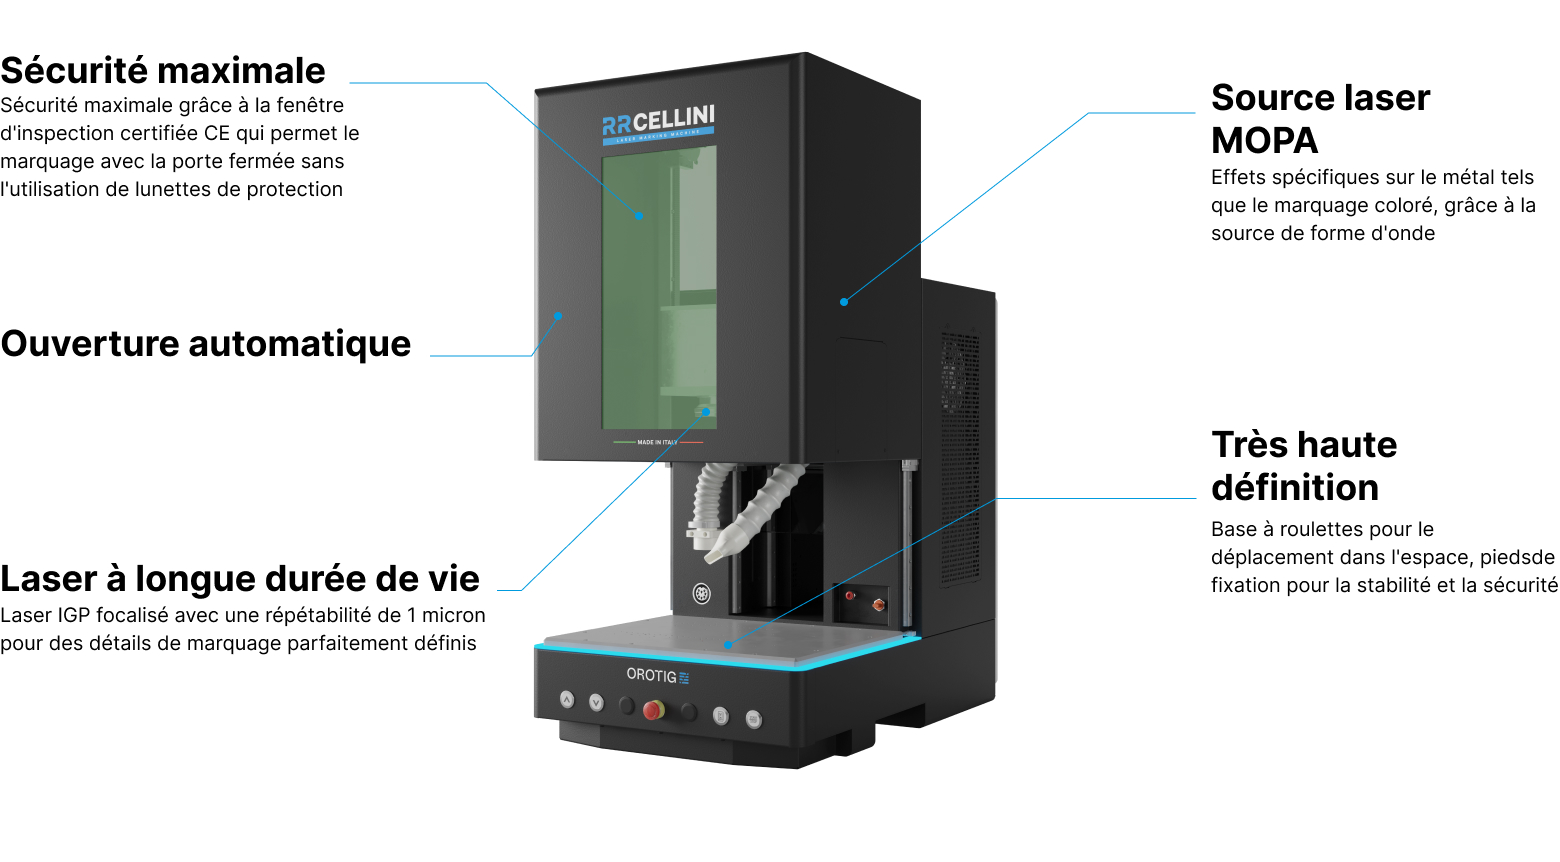 Caractéristiques techniques de la machine de marquage 3D RR Cellini d’Orotig.